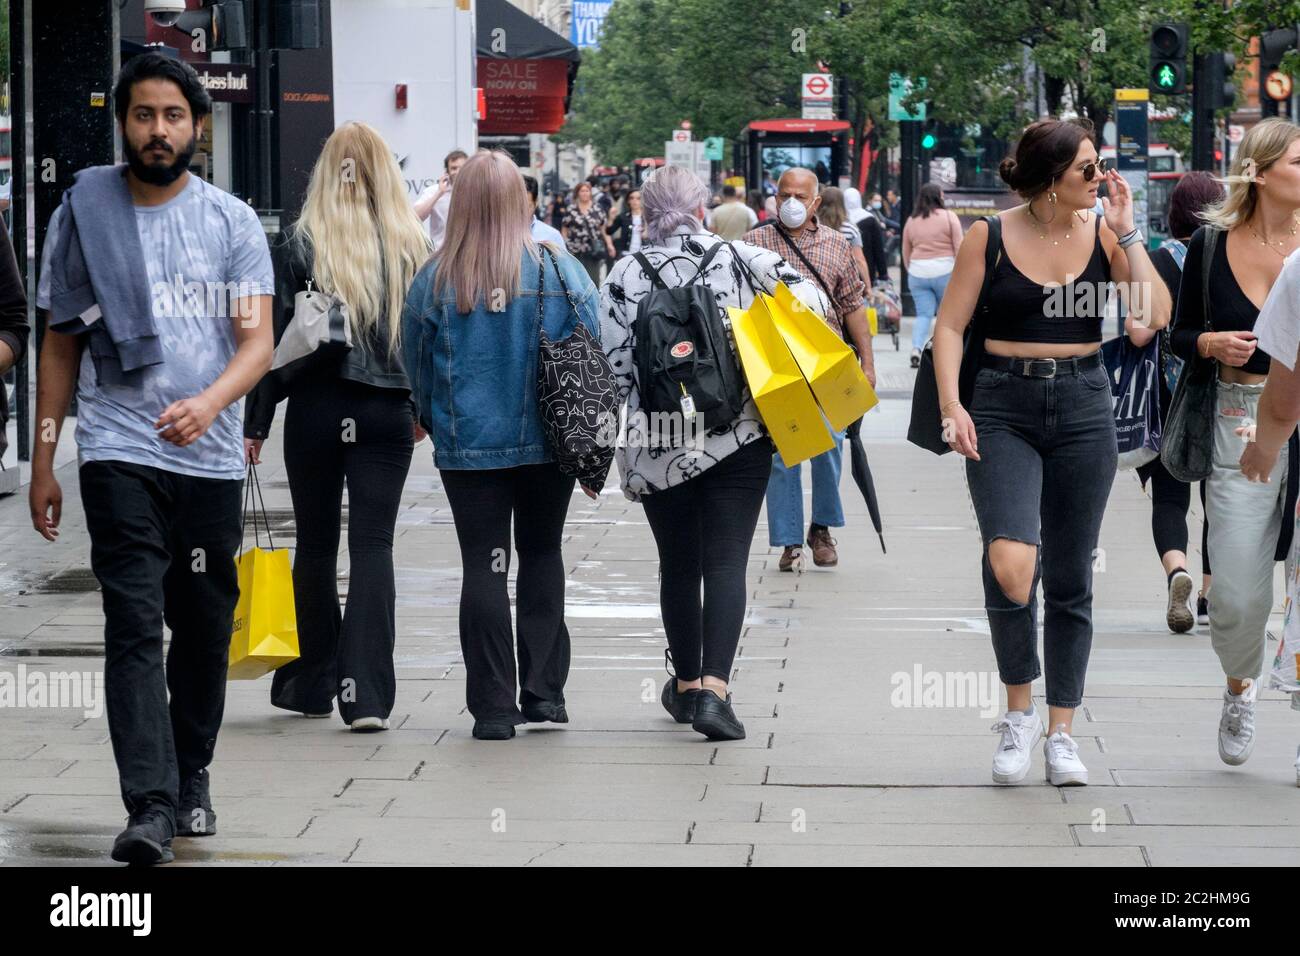 17 juin 2020. Les acheteurs d'Oxford Street, Londres, suite à l'assouplissement des mesures de confinement de Covid-19 en Angleterre, qui ont permis la réouverture de magasins de détail non essentiels. Banque D'Images